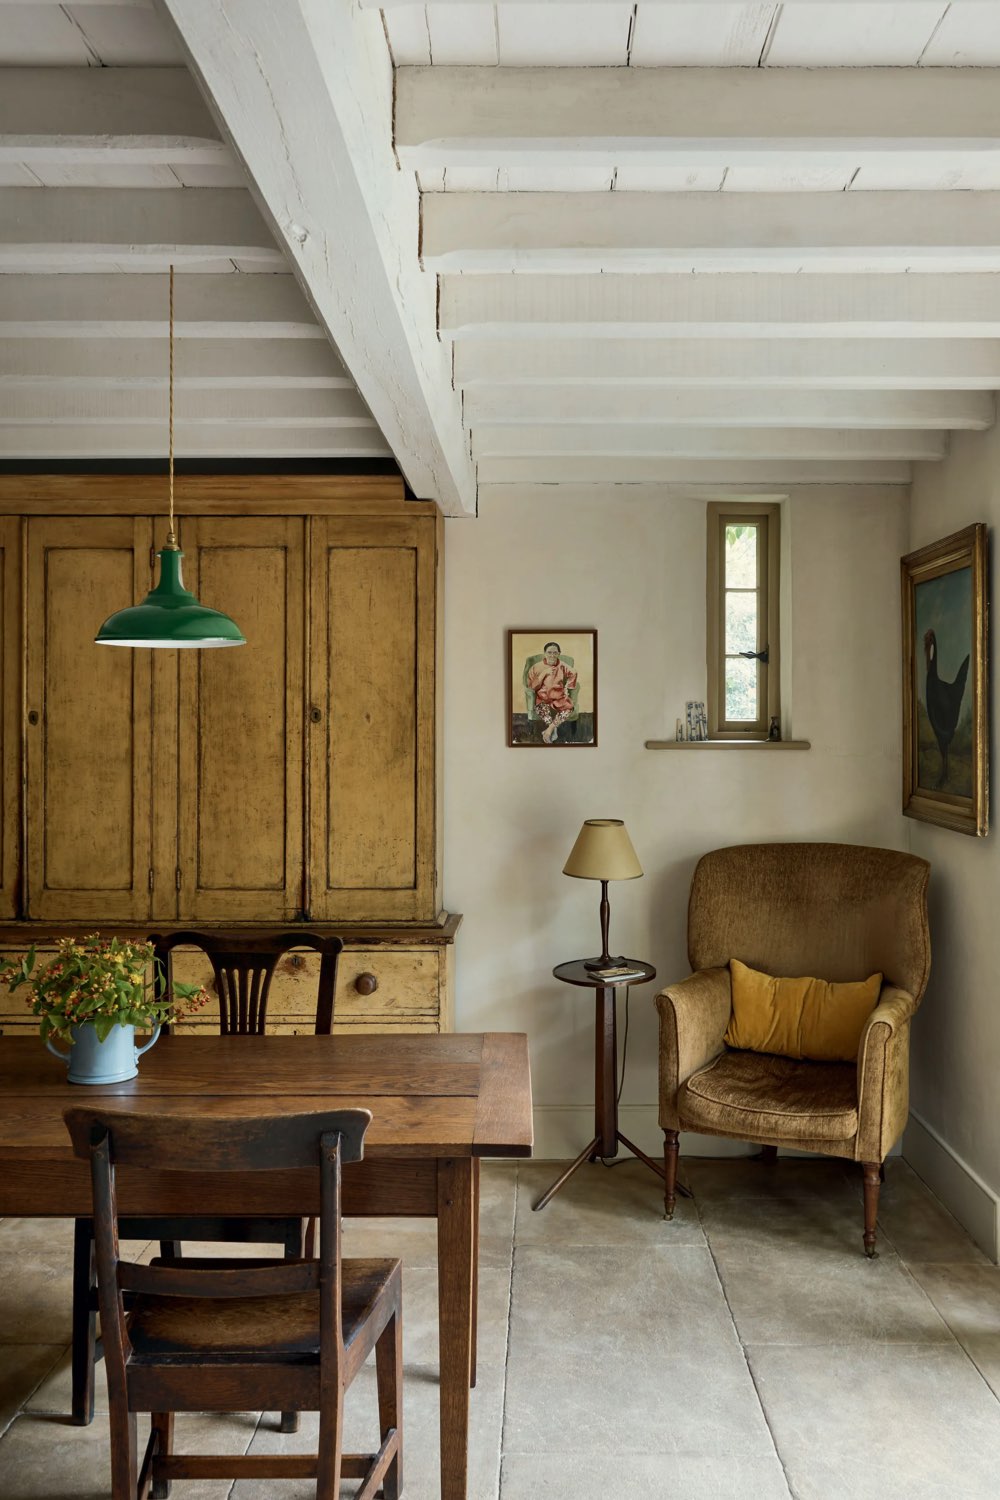 deco cottage anglais 17eme siecle salle à manger table en bois rustique fauteuil cosy meuble ancien rangement brocante antiquaire